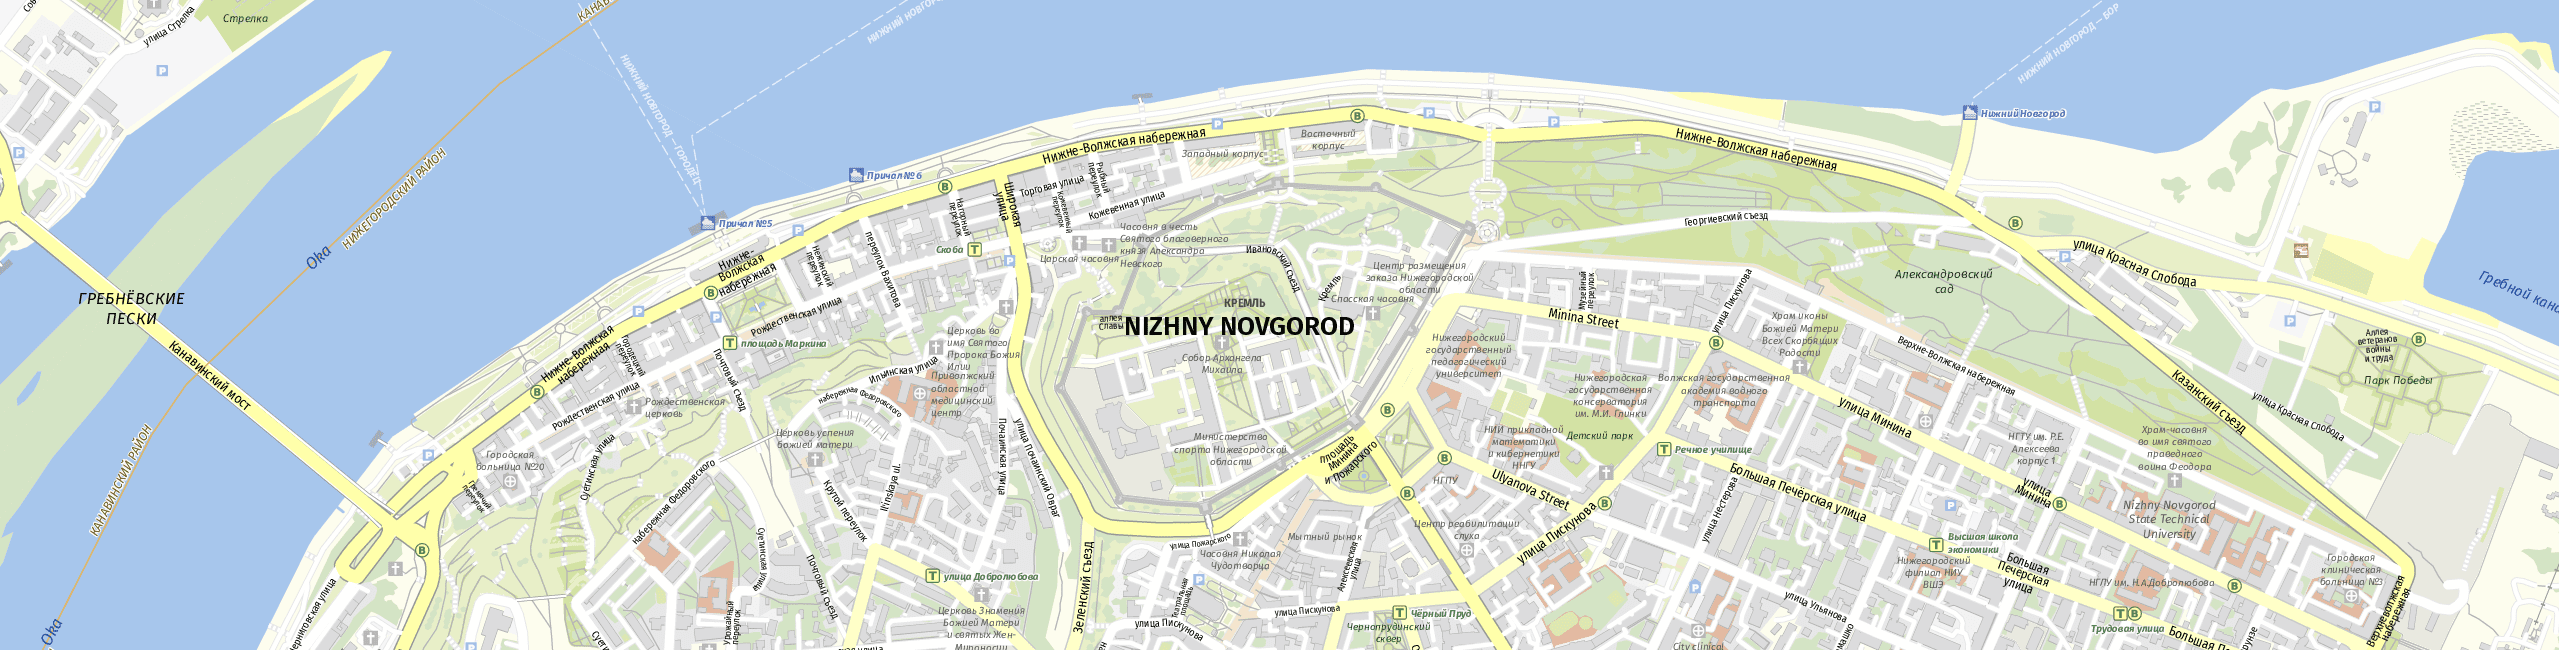 Stadtplan Nizhny Novgorod zum Downloaden.